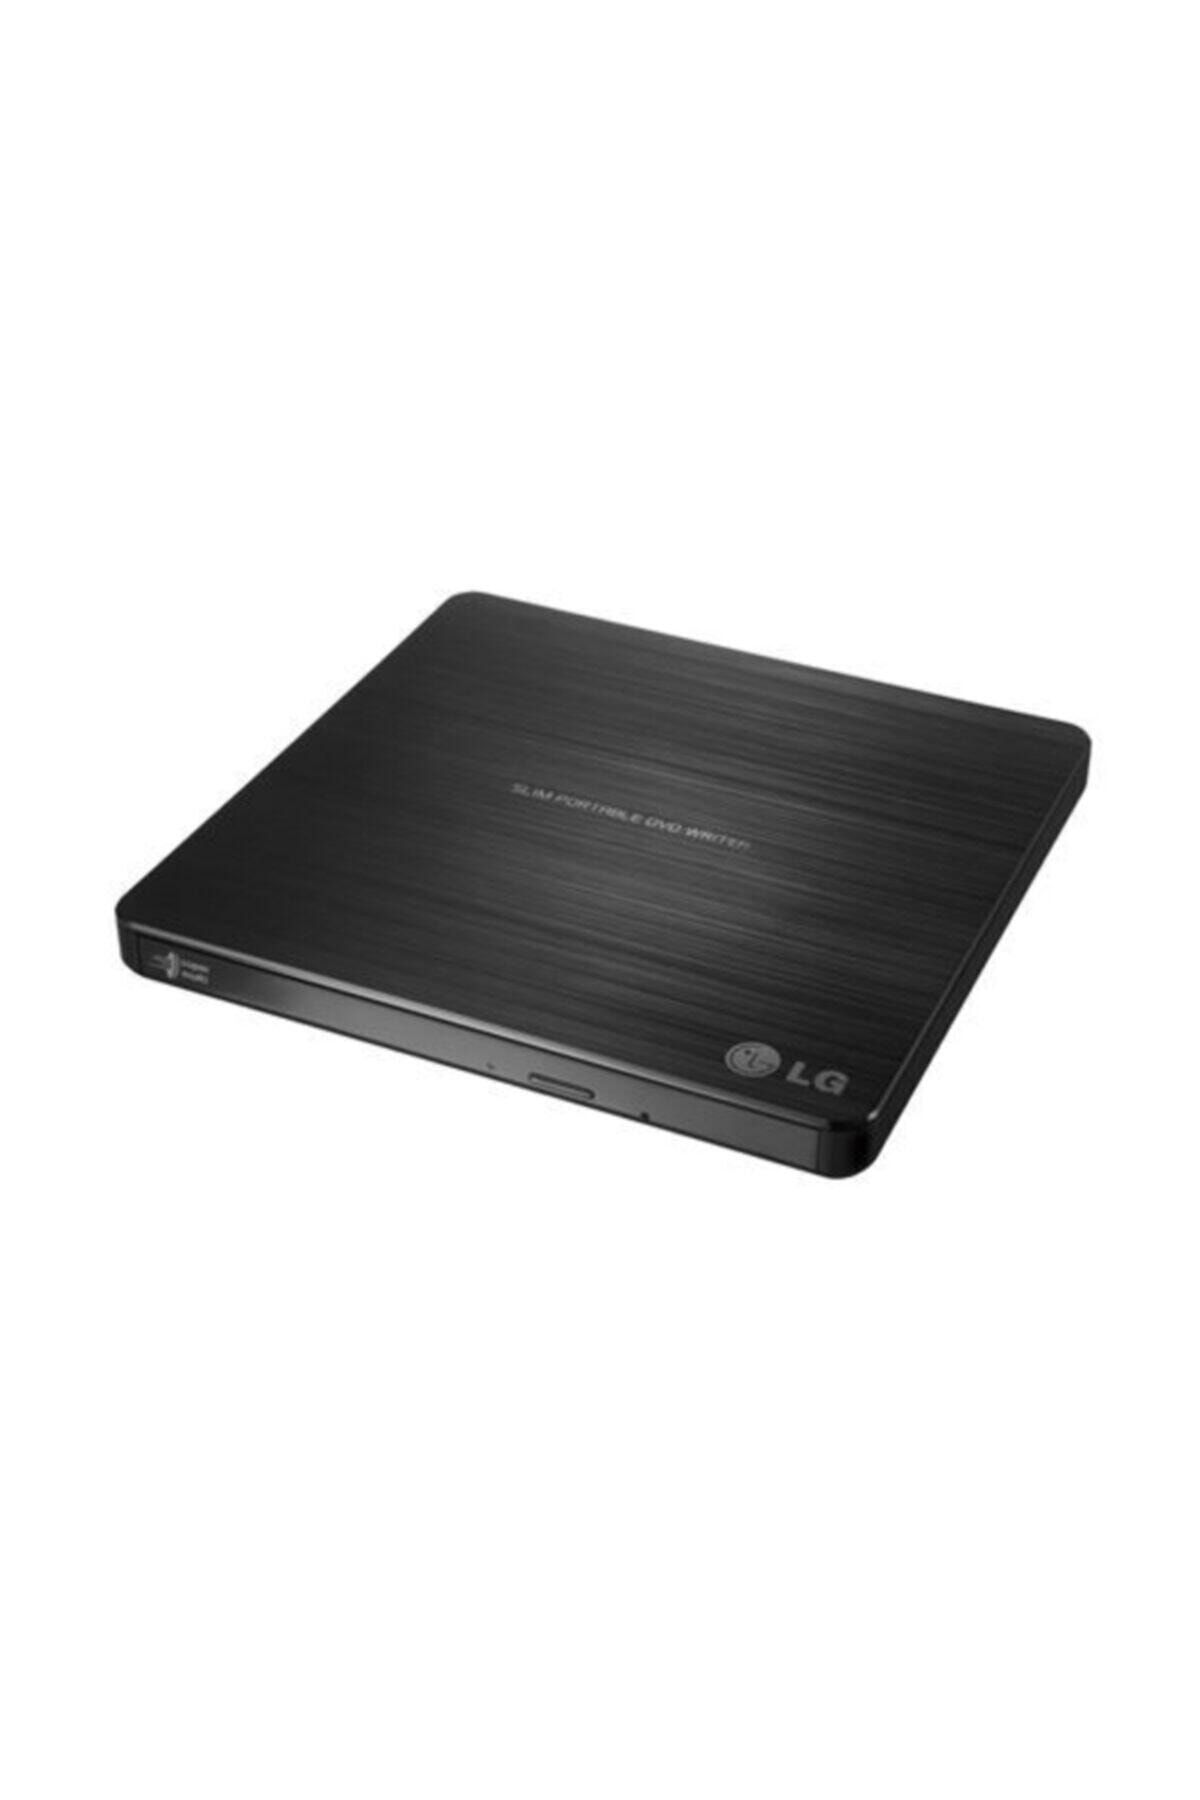 LG External Dvd-rw Writer Harici Dvd Yazıcı Ultra Slim